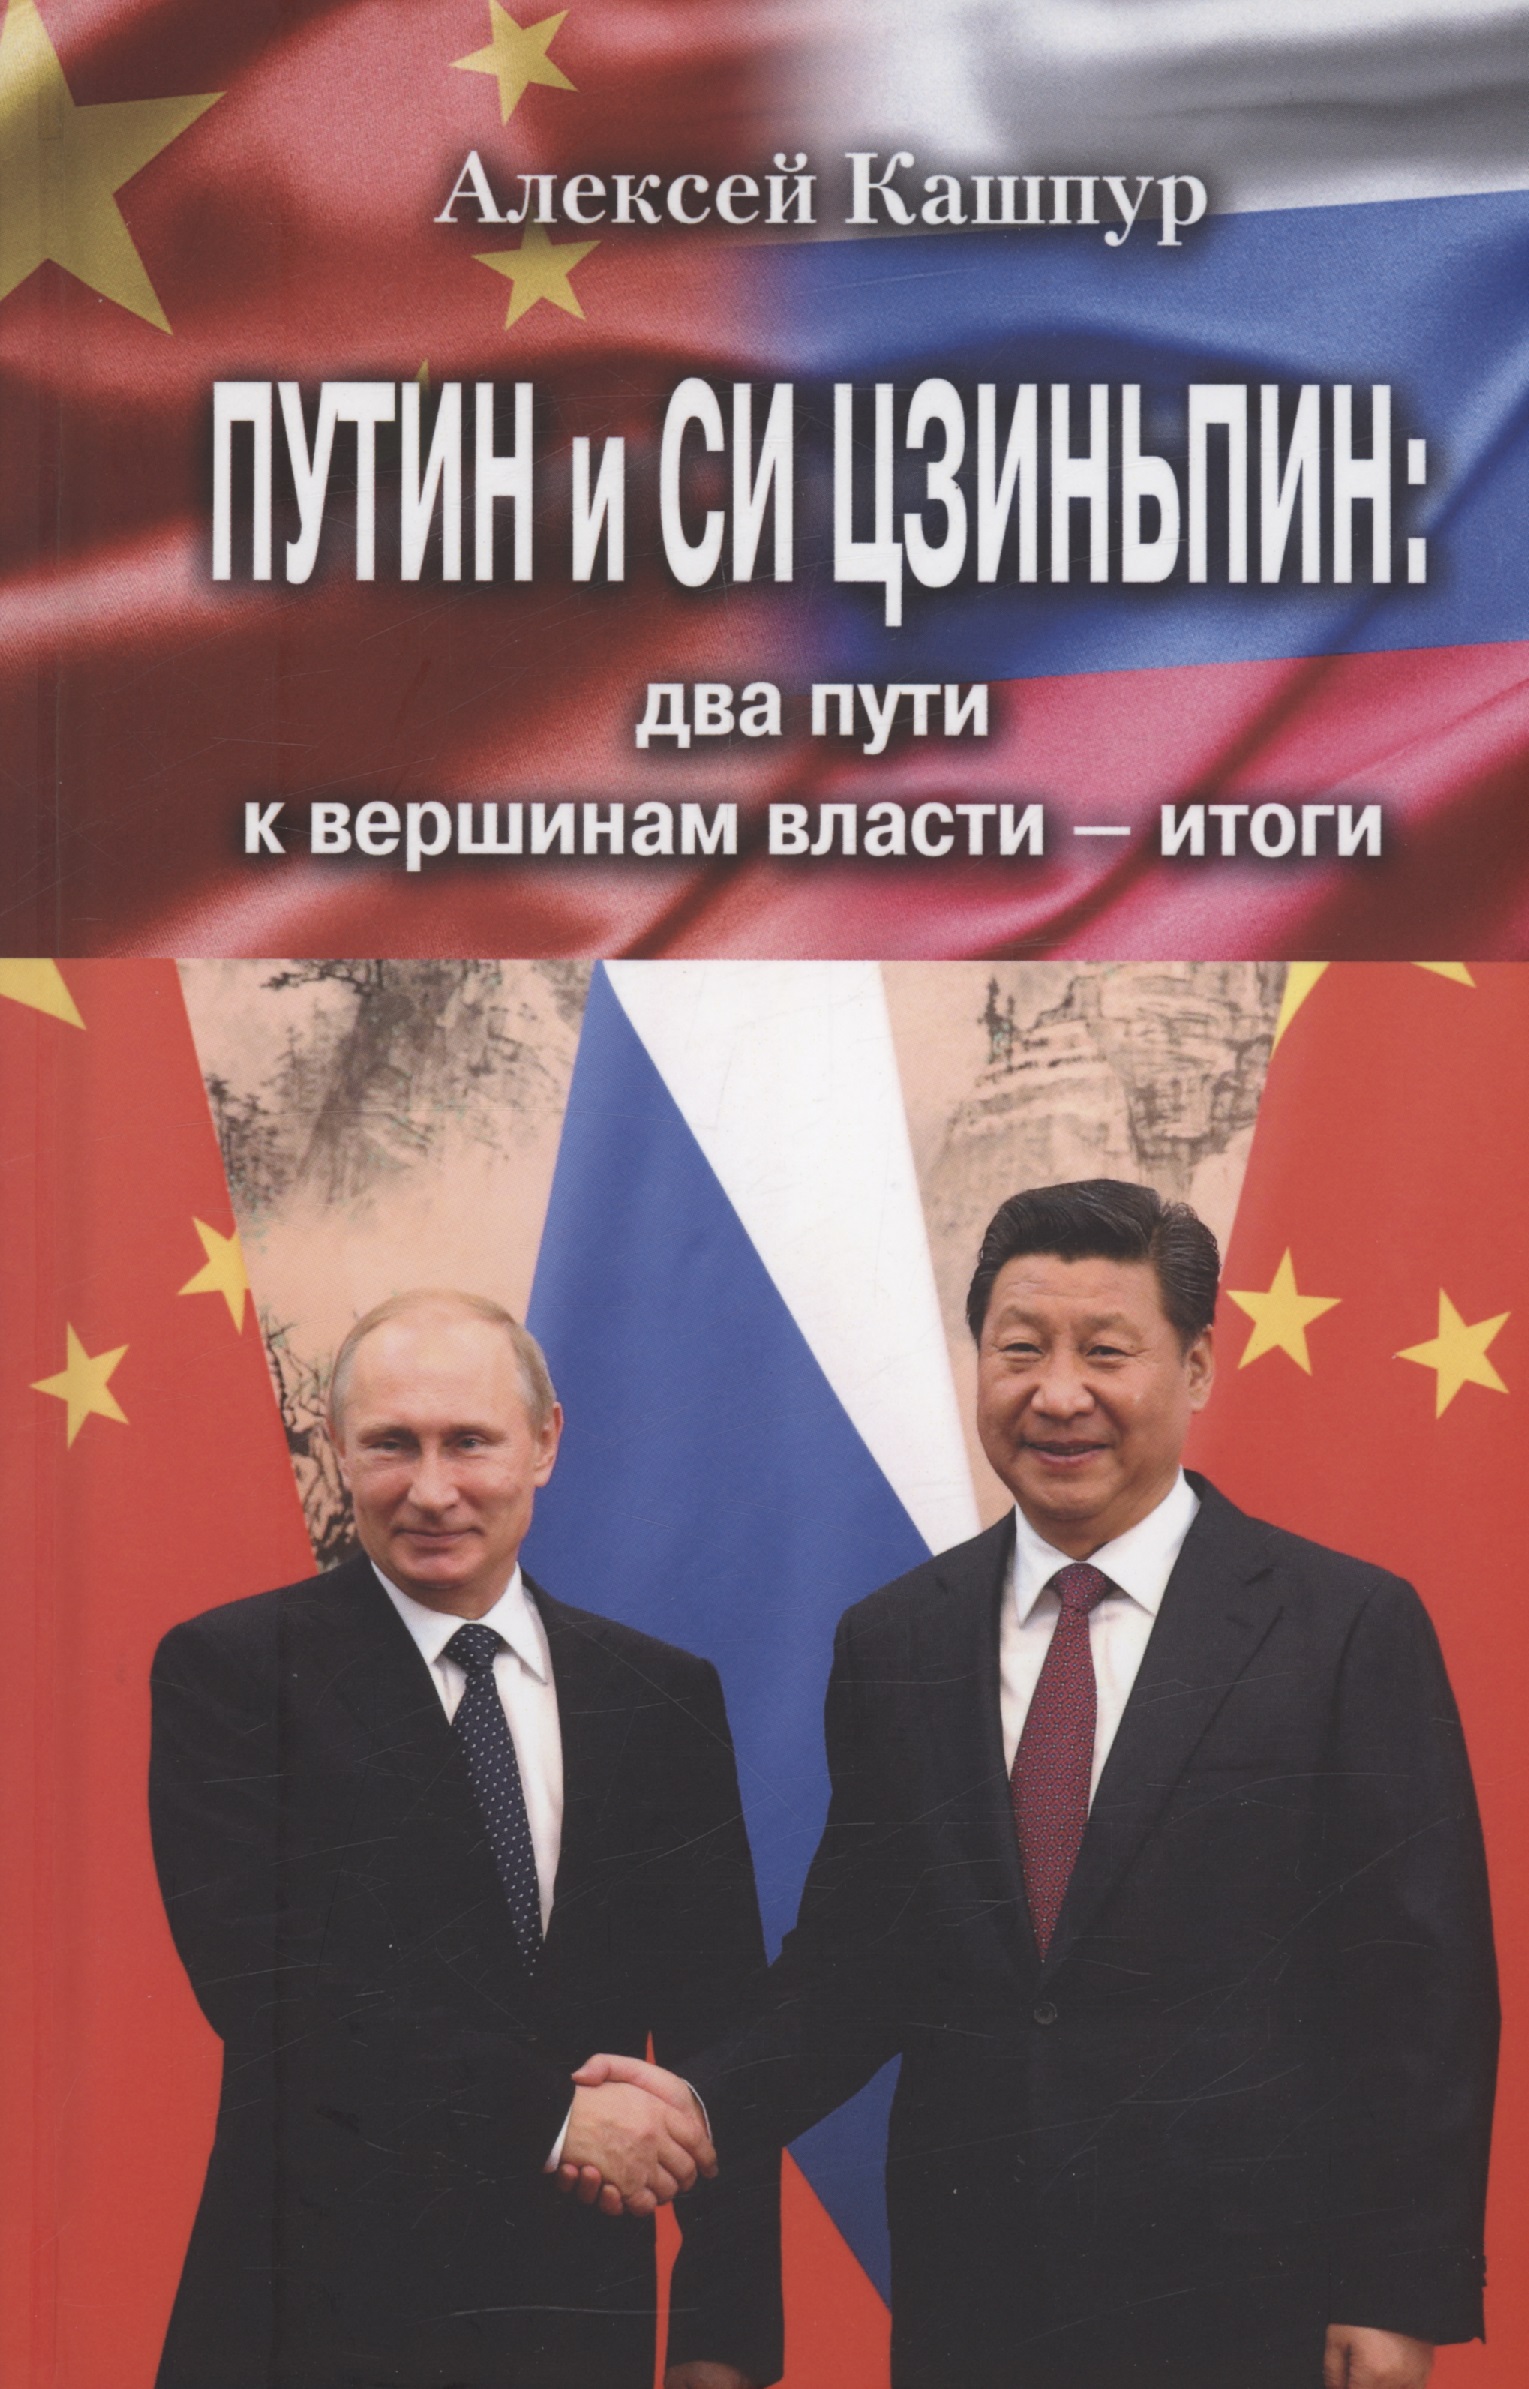 Путин и Си Цзиньпин: два пути к вершинам власти - итоги в путин и си цзиньпин личность и лидерство